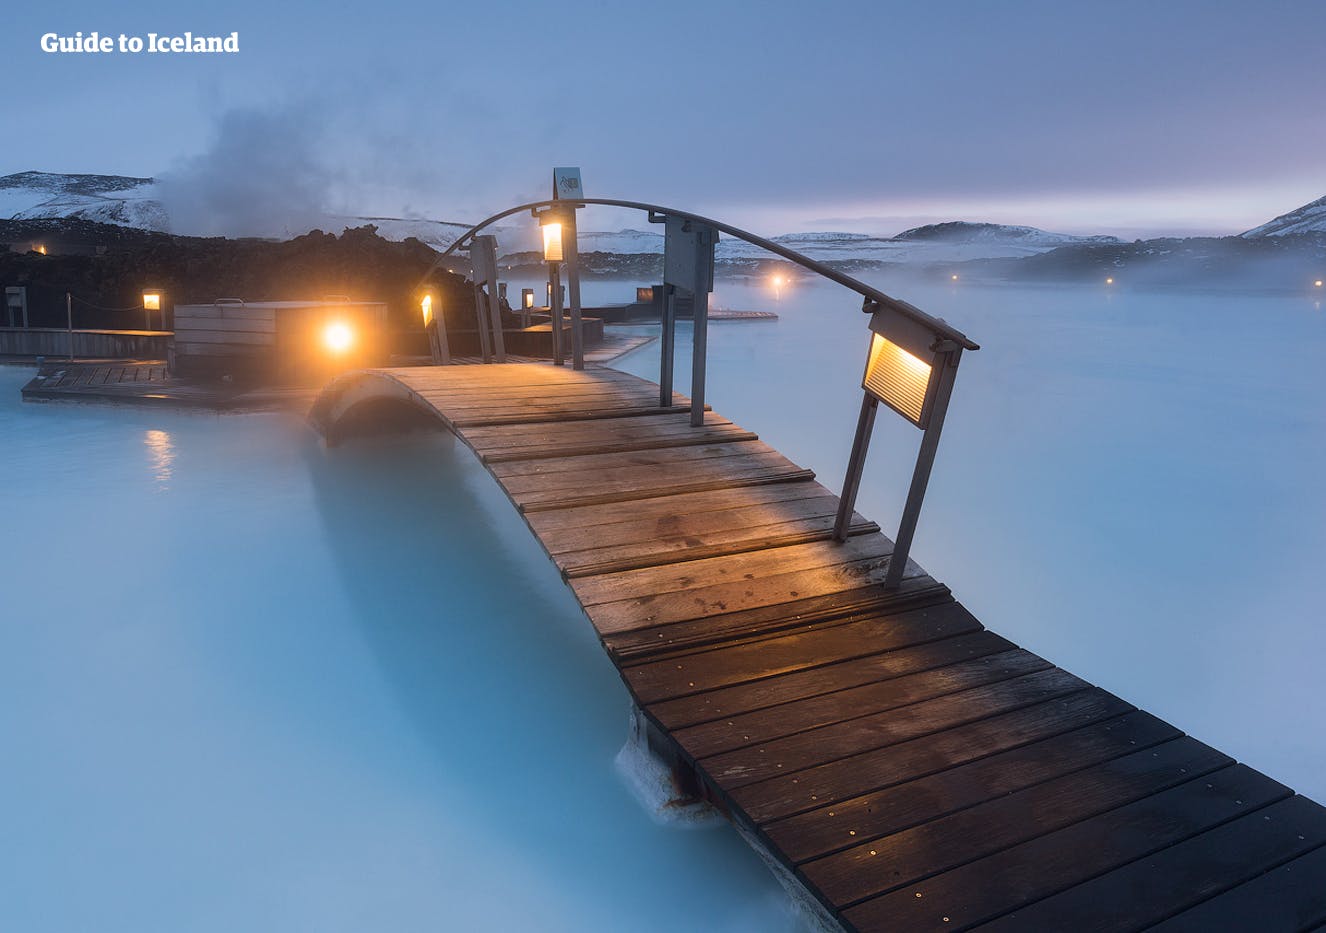 Ein Entspannungsbad im warmen geothermischen Wasser der Blauen Lagune - umgeben von tiefschwarzer, schneebedeckter Lava - ist ein Erlebnis, das man nicht so schnell vergisst